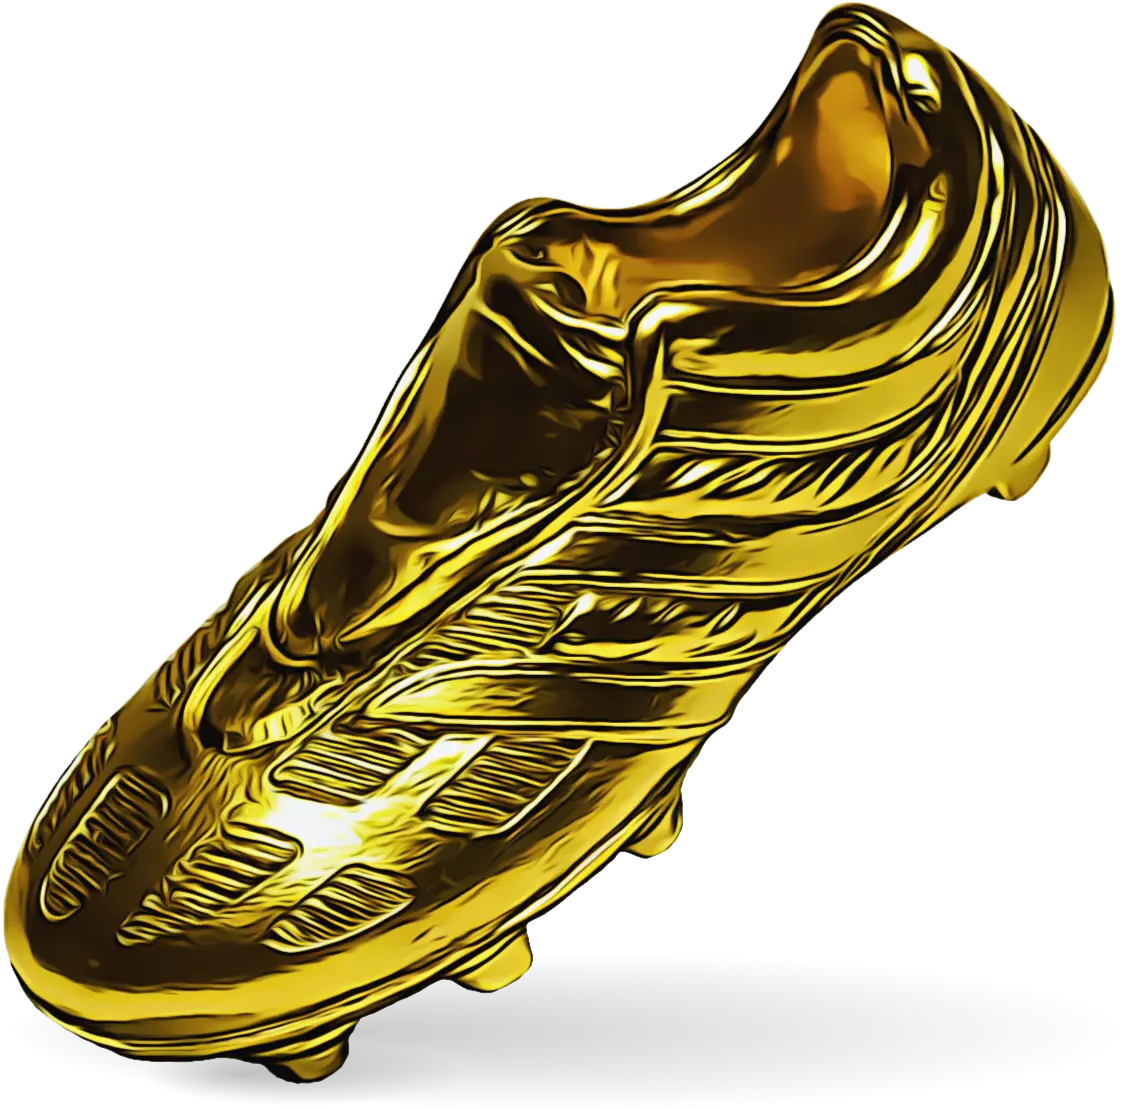 Golden Shoe 2022-23: Haaland, Lewandowski & European football's